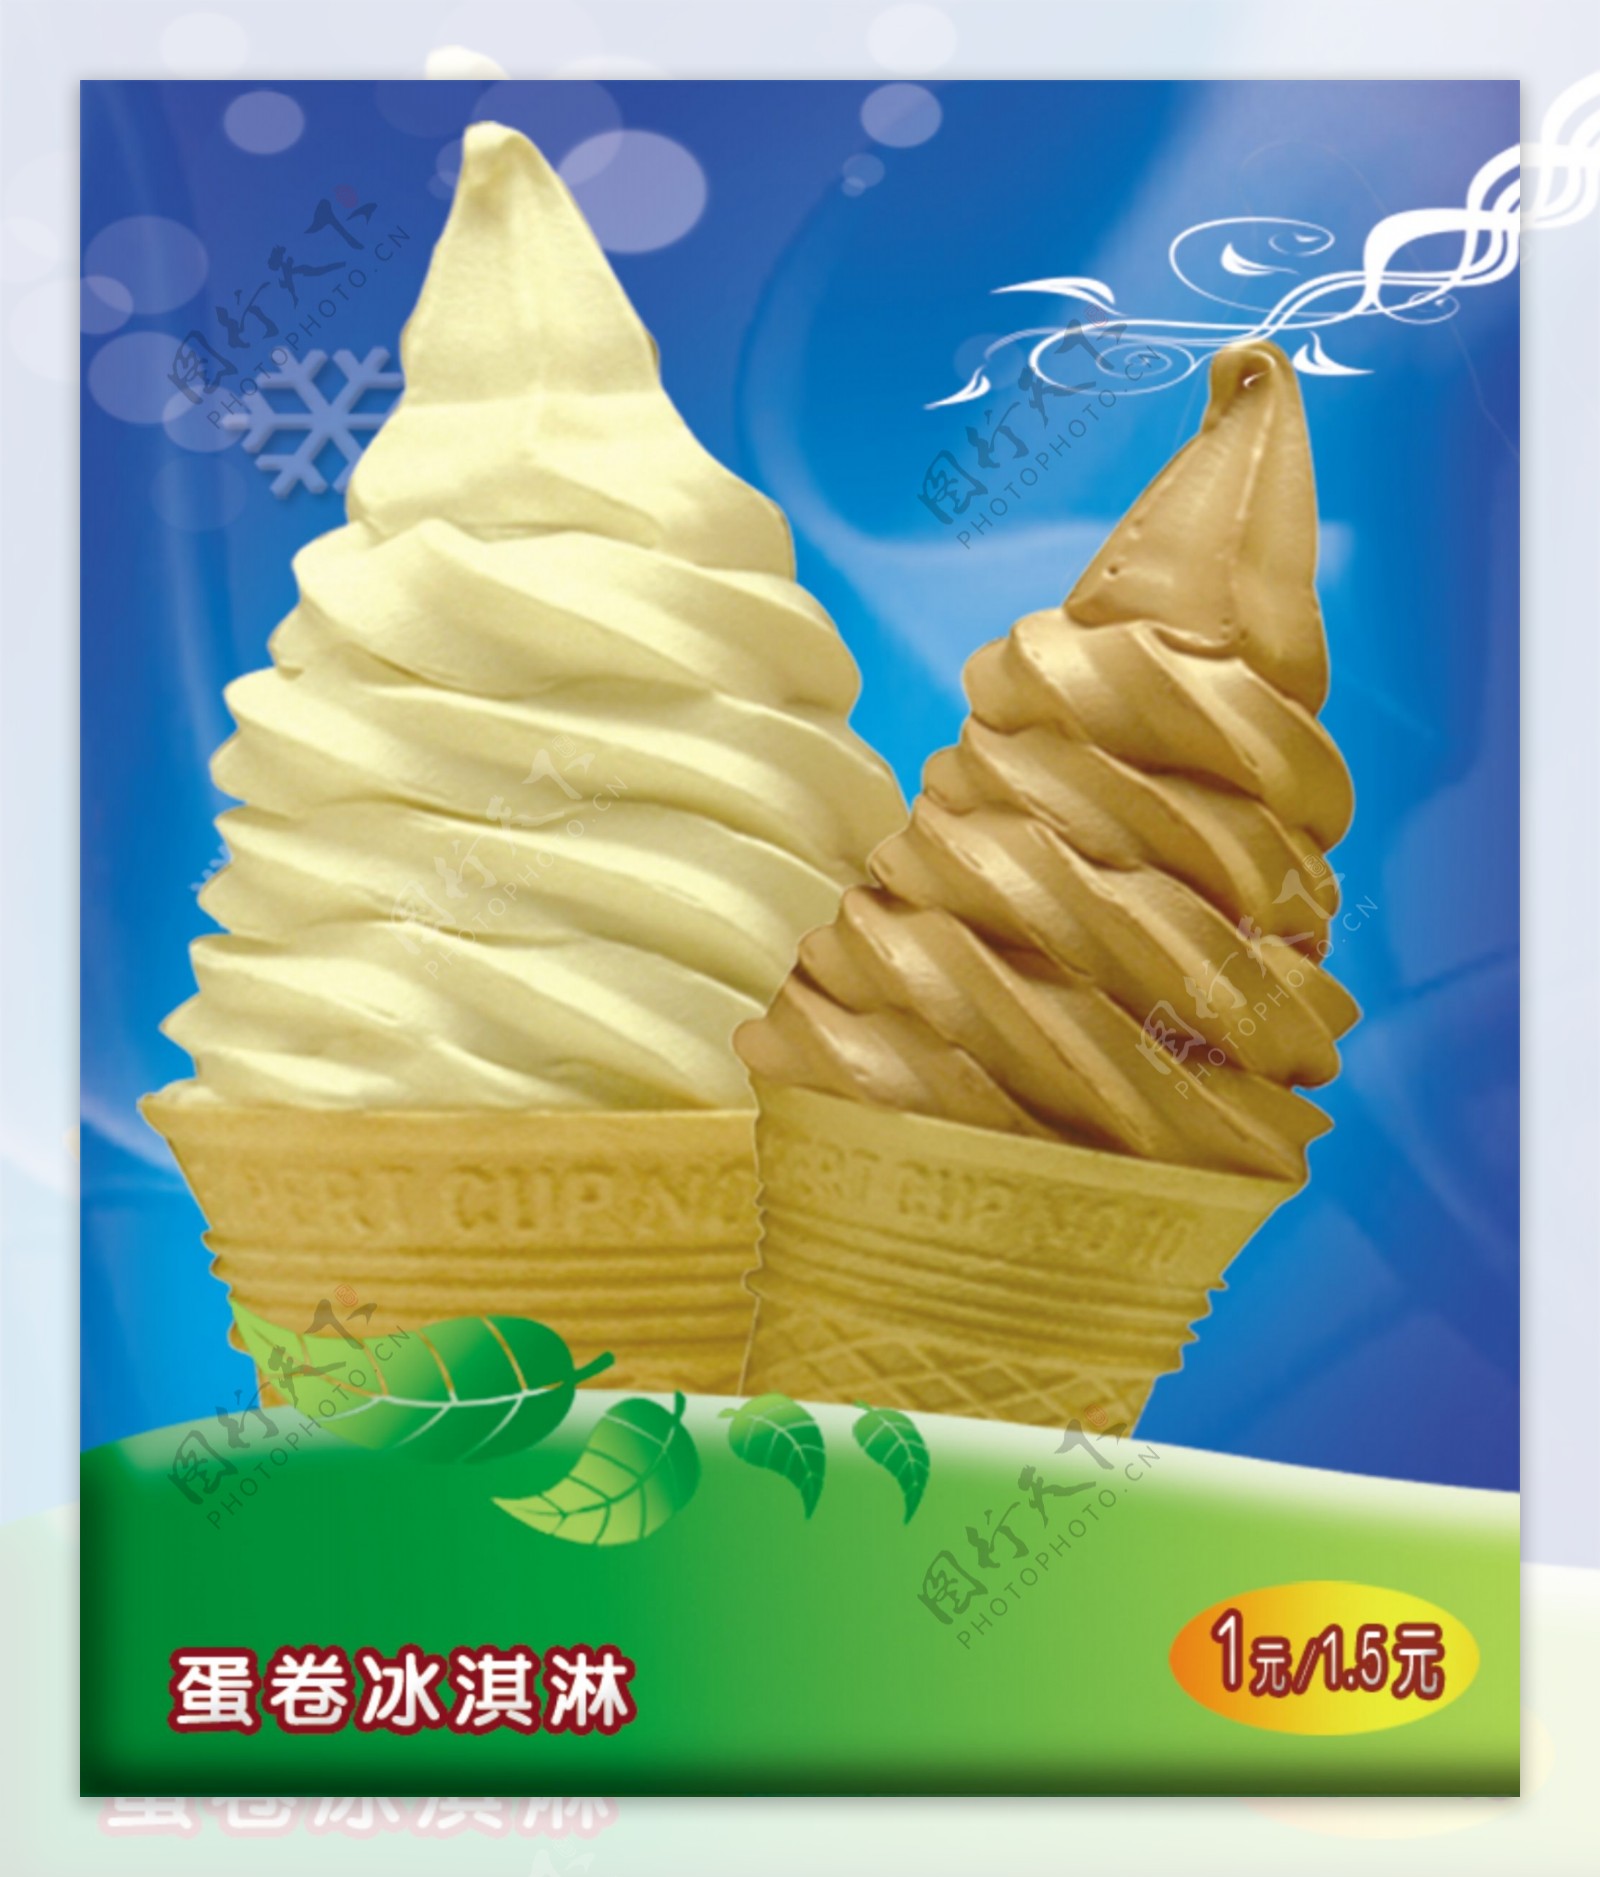 冰淇淋蓝色背景花边绿叶蛋卷冰淇淋图片